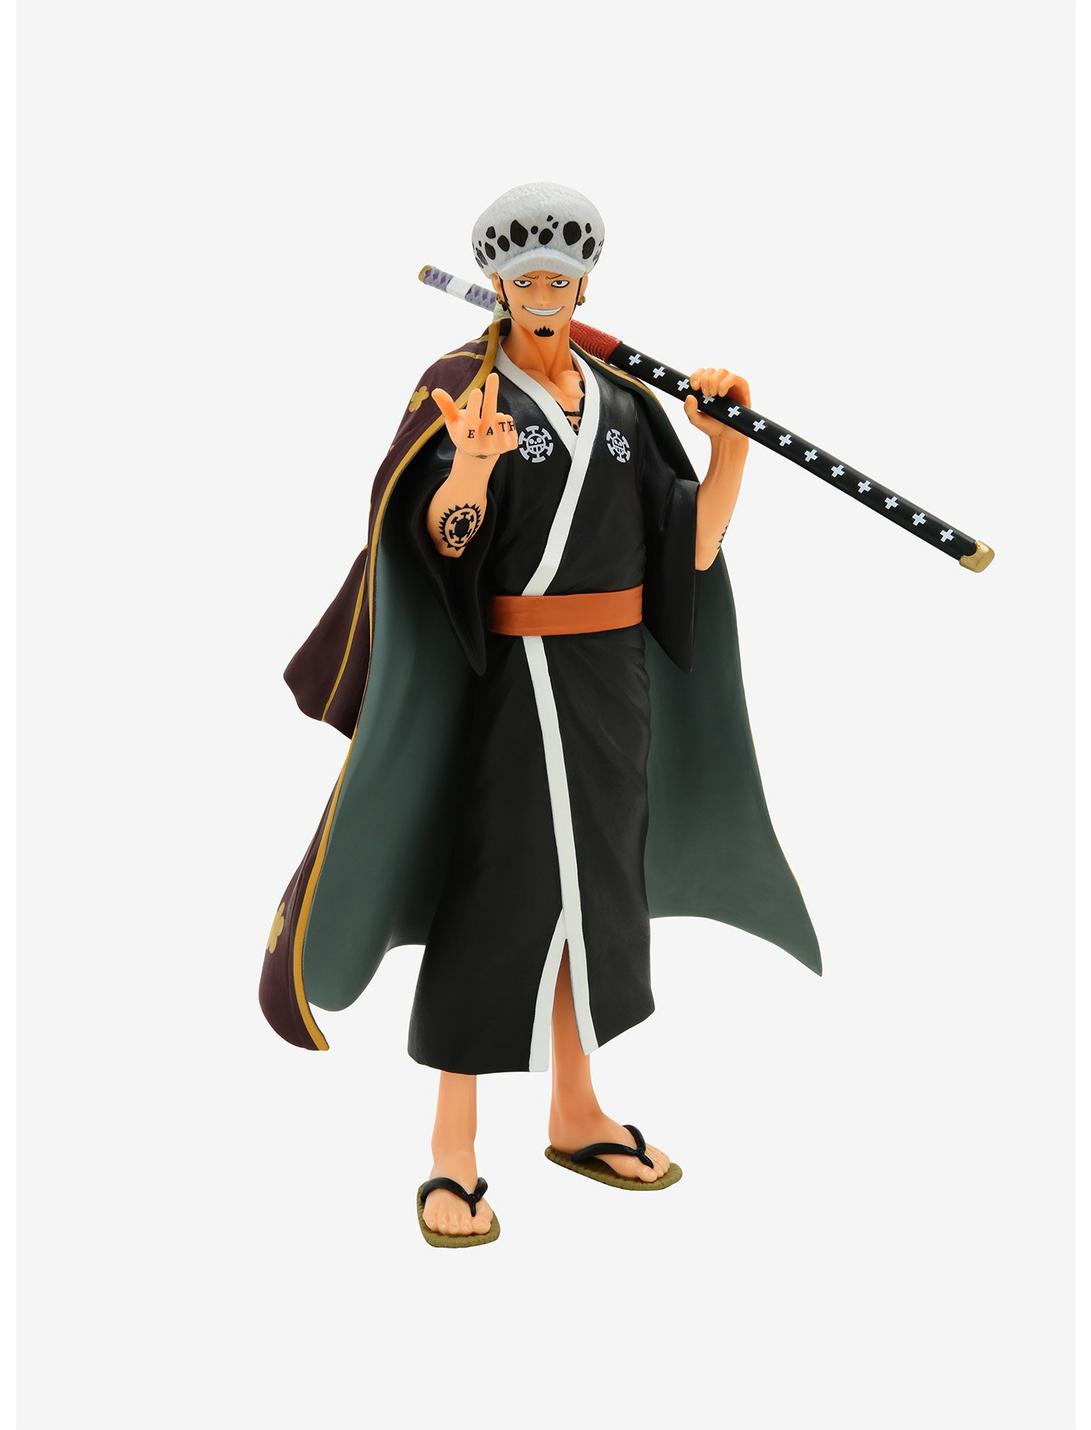 Bandai Spirits One Piece Ichiban Kuji Trafalgar Law Collectible Figure, , hi-res